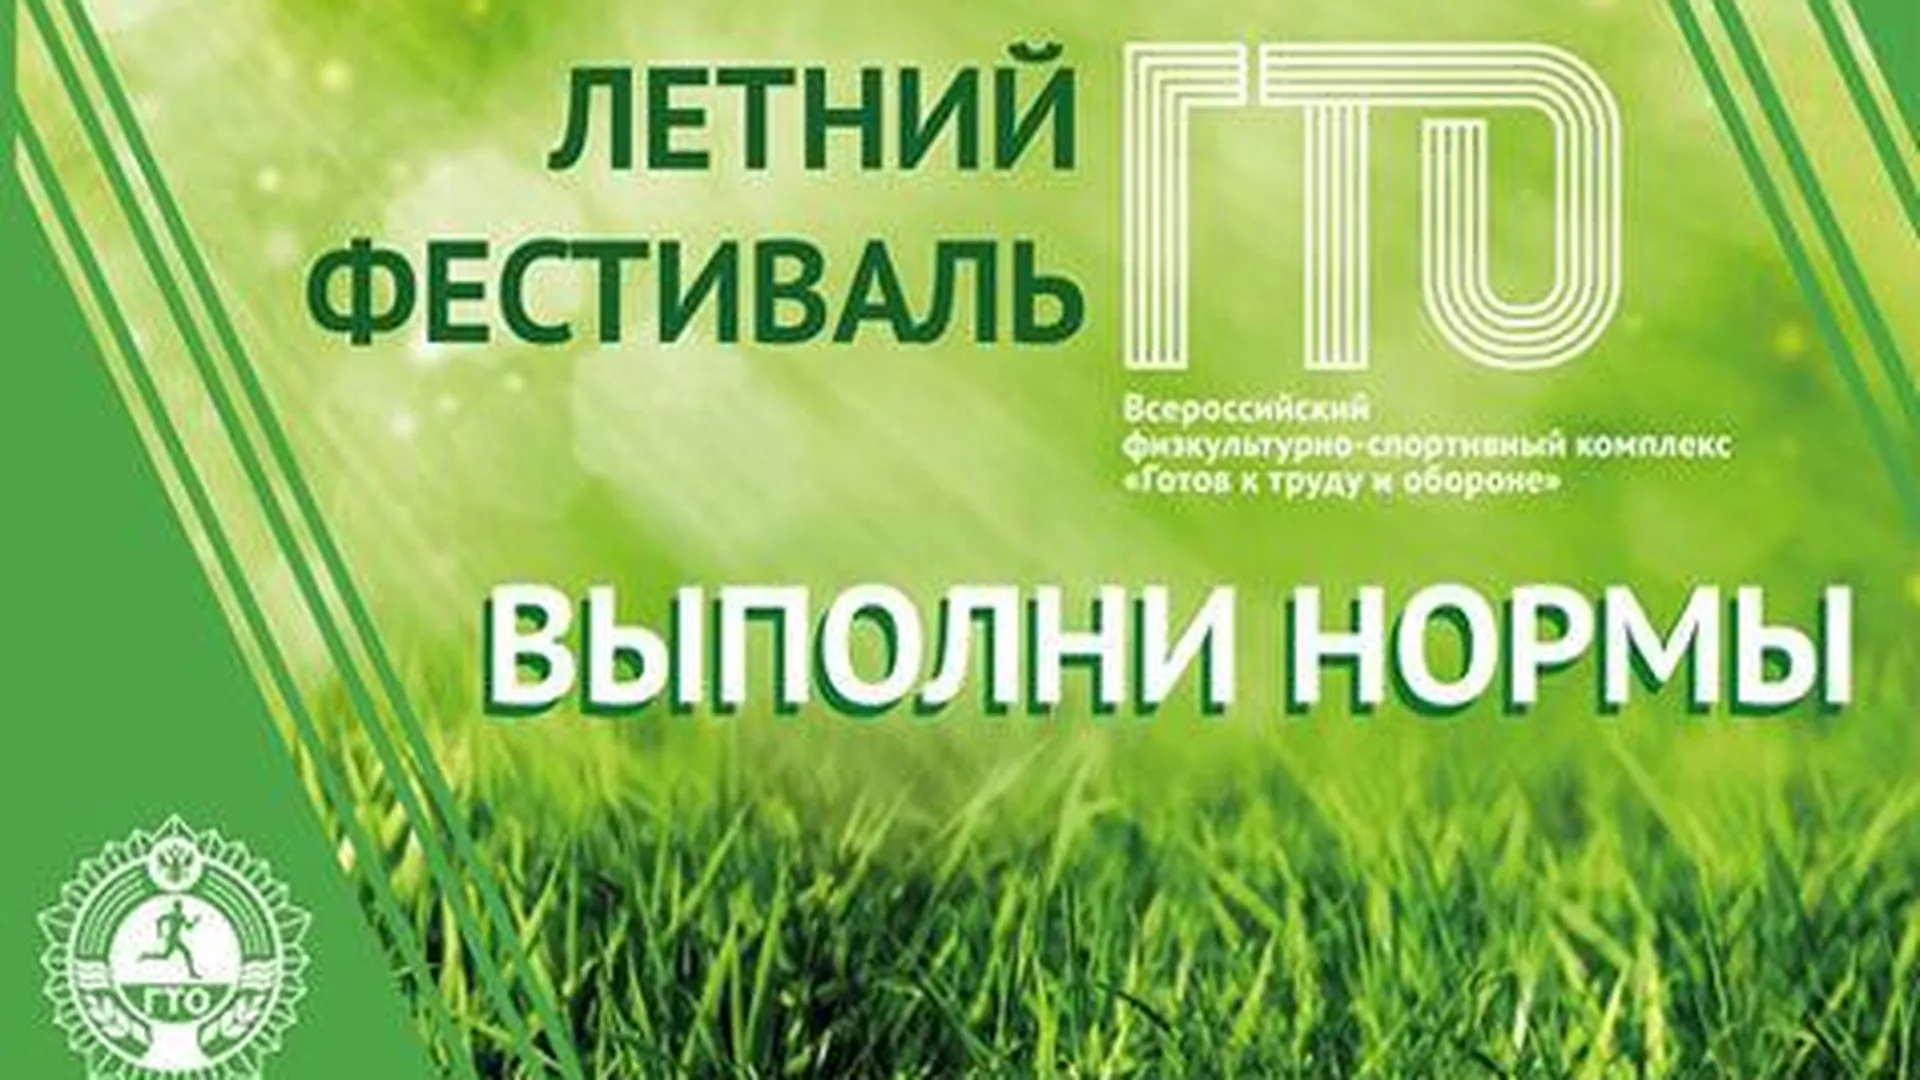 Летний фестиваль ГТО пройдет в Подмосковье 28 мая